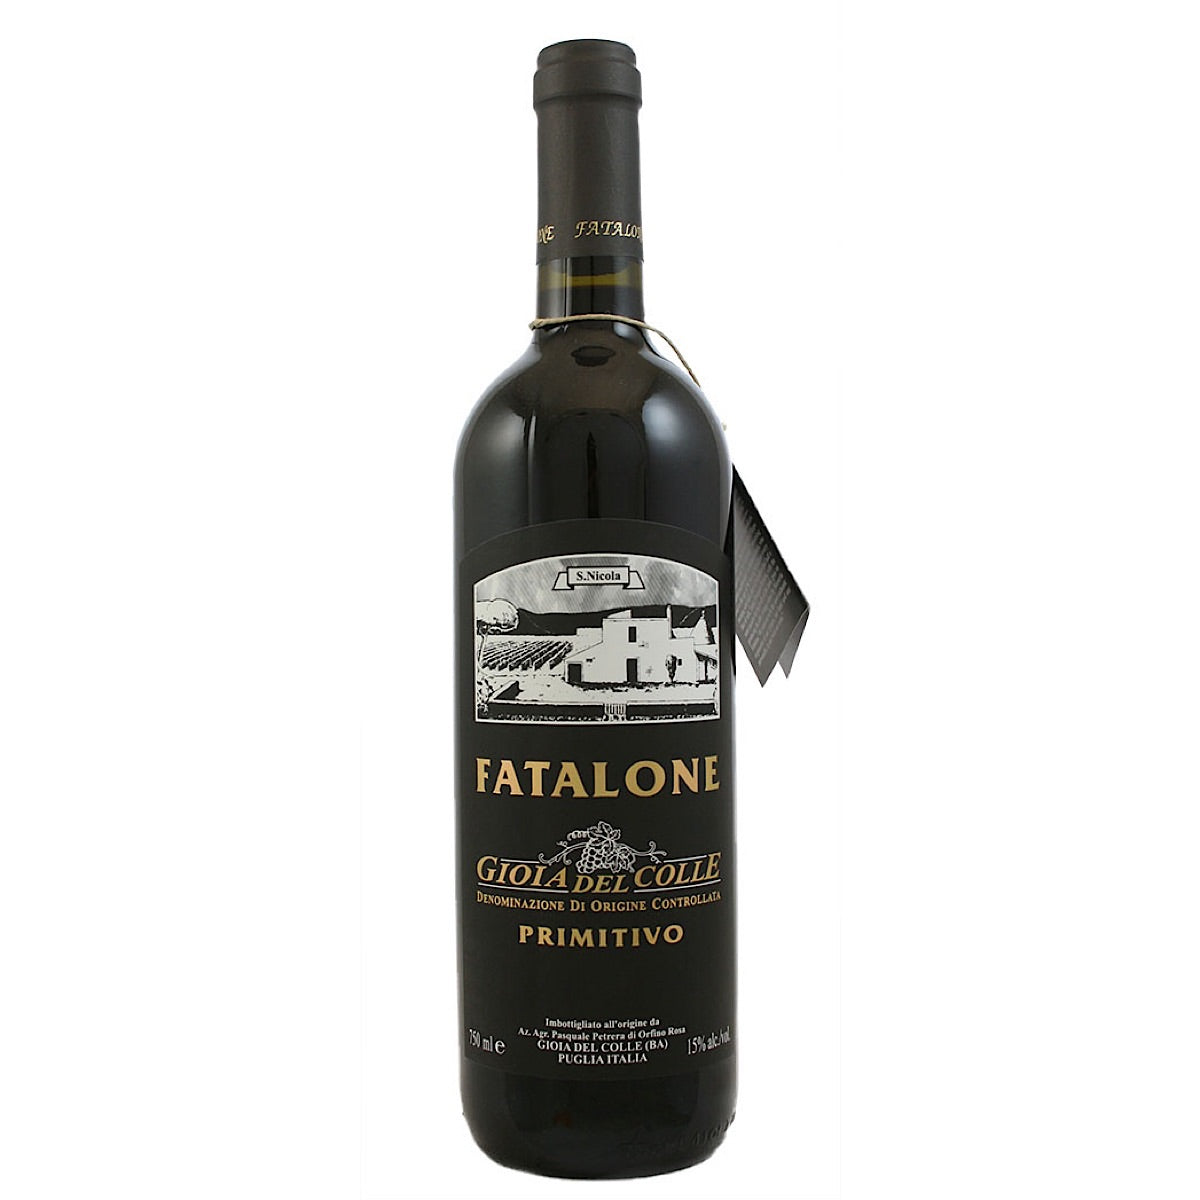 FATALONE, PRIMITIVO GIOIA DEL COLLE, 6 Bottle Case 75cl